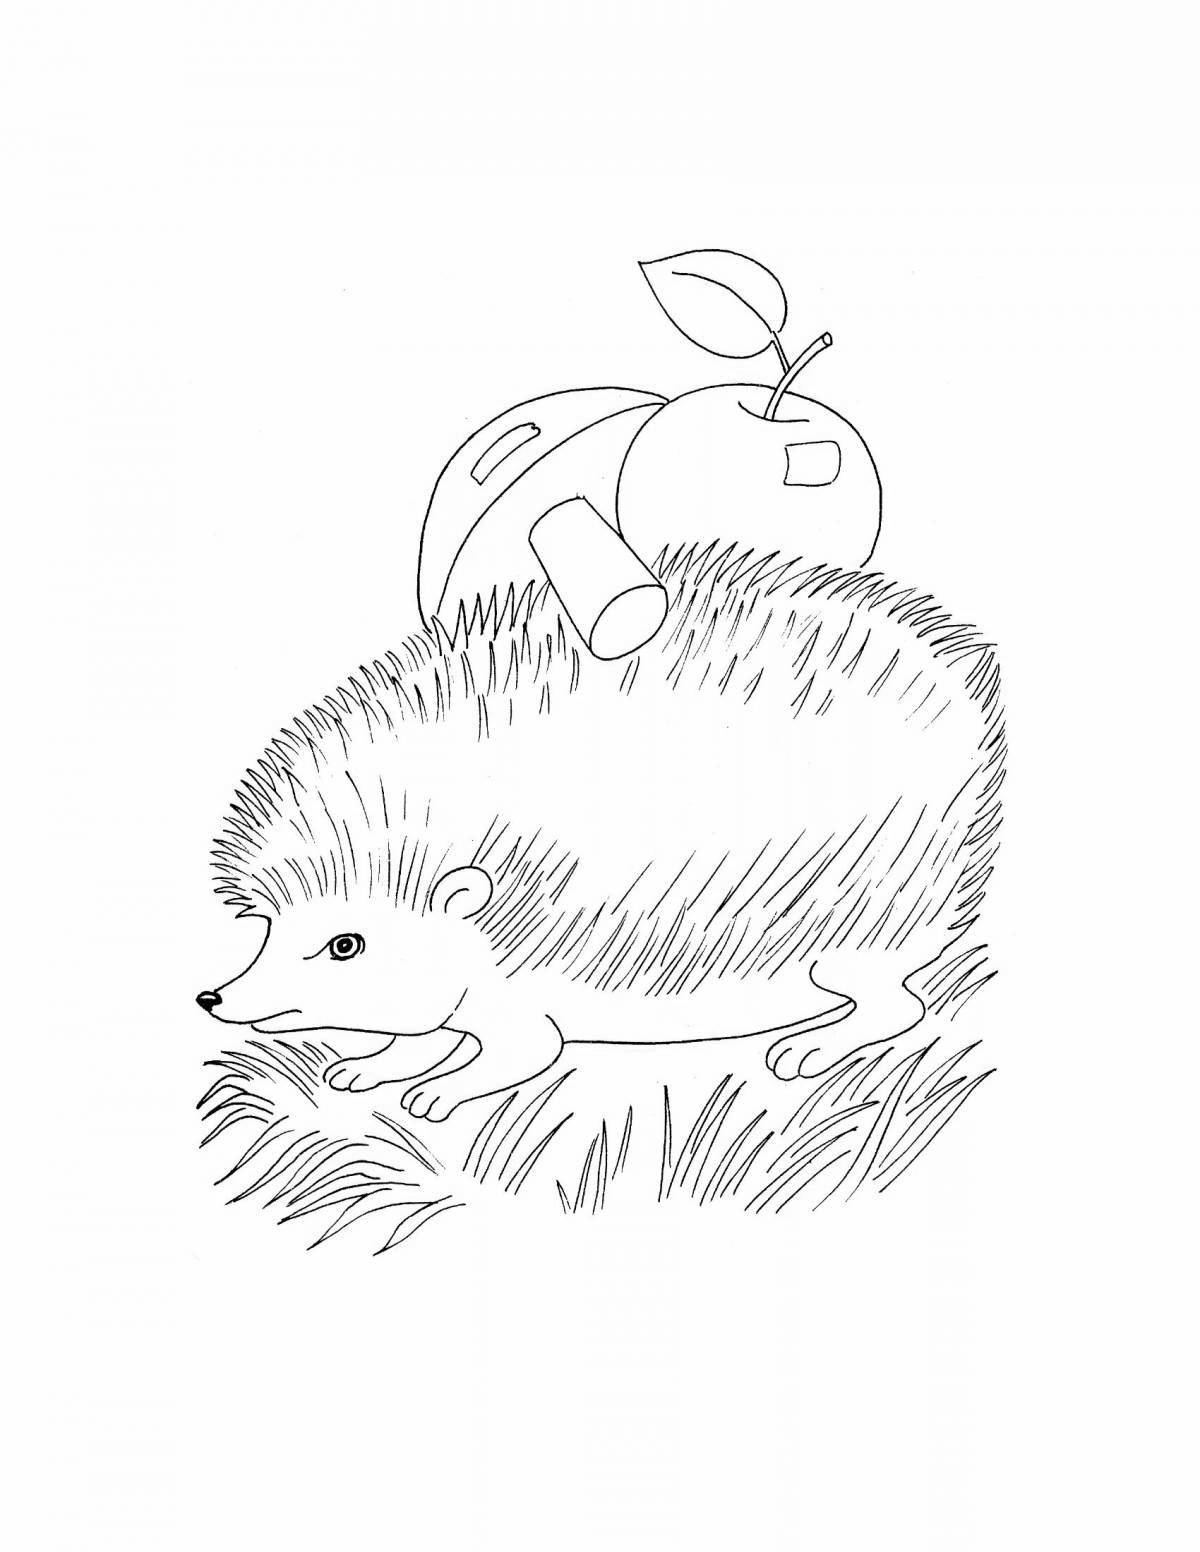 Cute hedgehog drawing